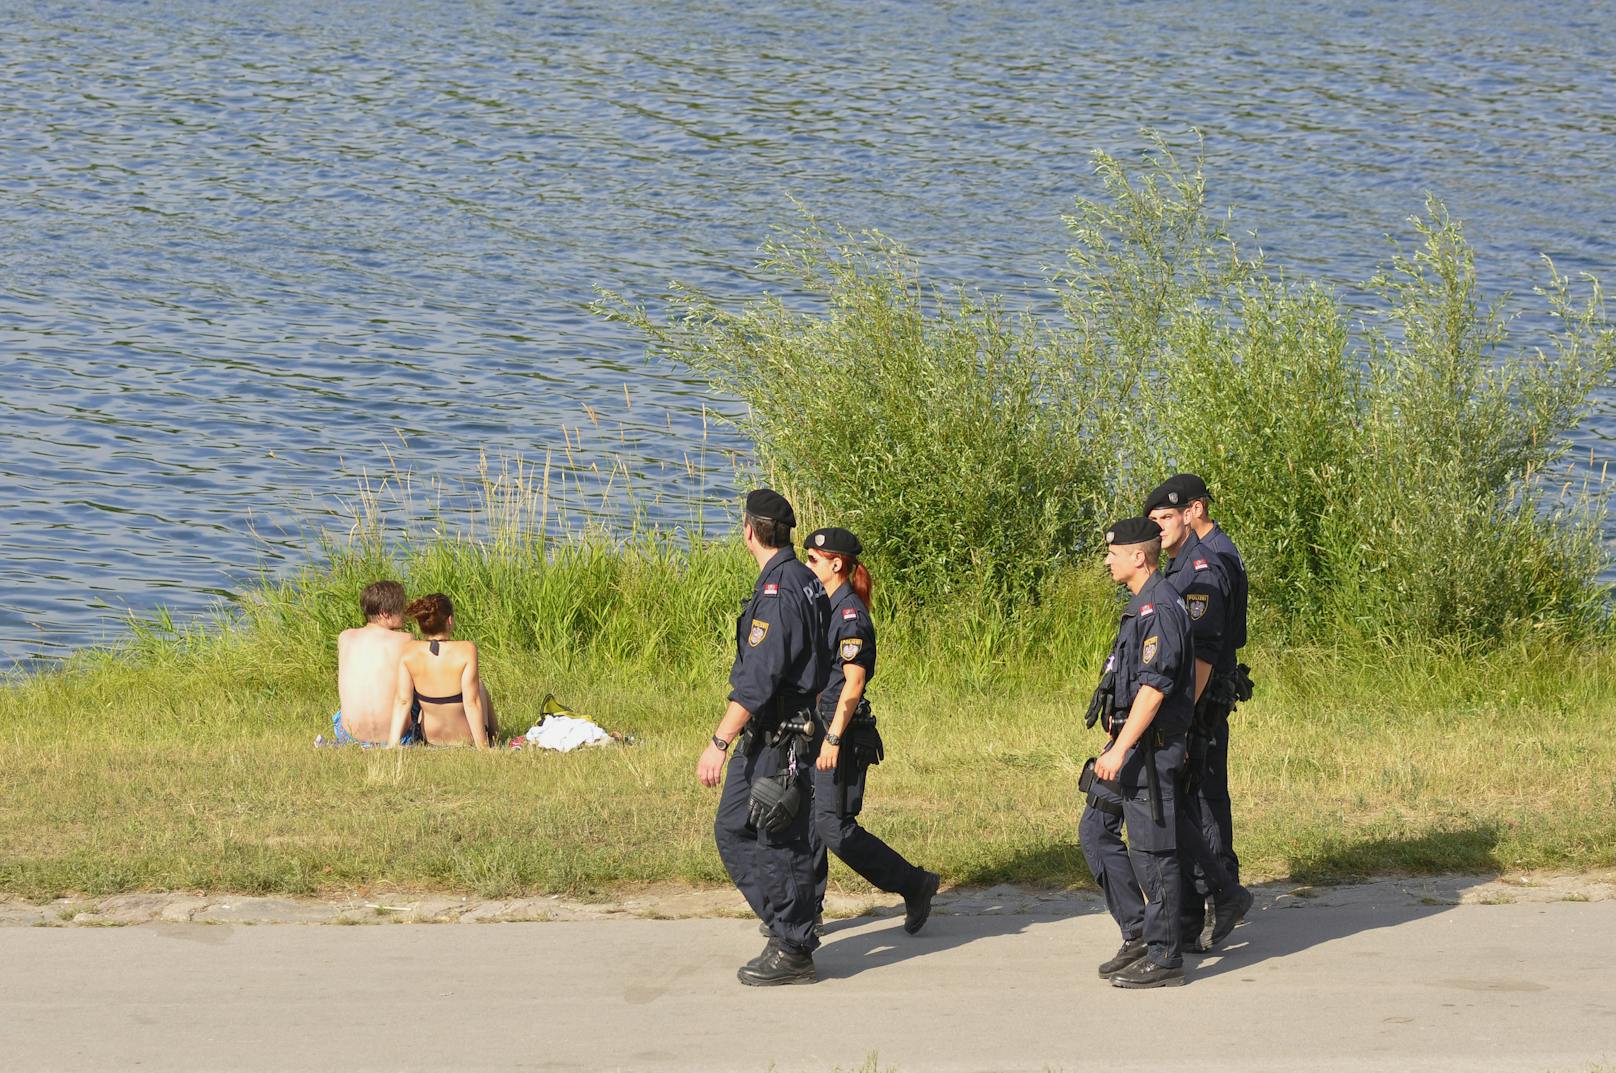 Auf der Donauinsel kam es am Freitag zu einer heftigen Auseinandersetzung. (Archivbild)